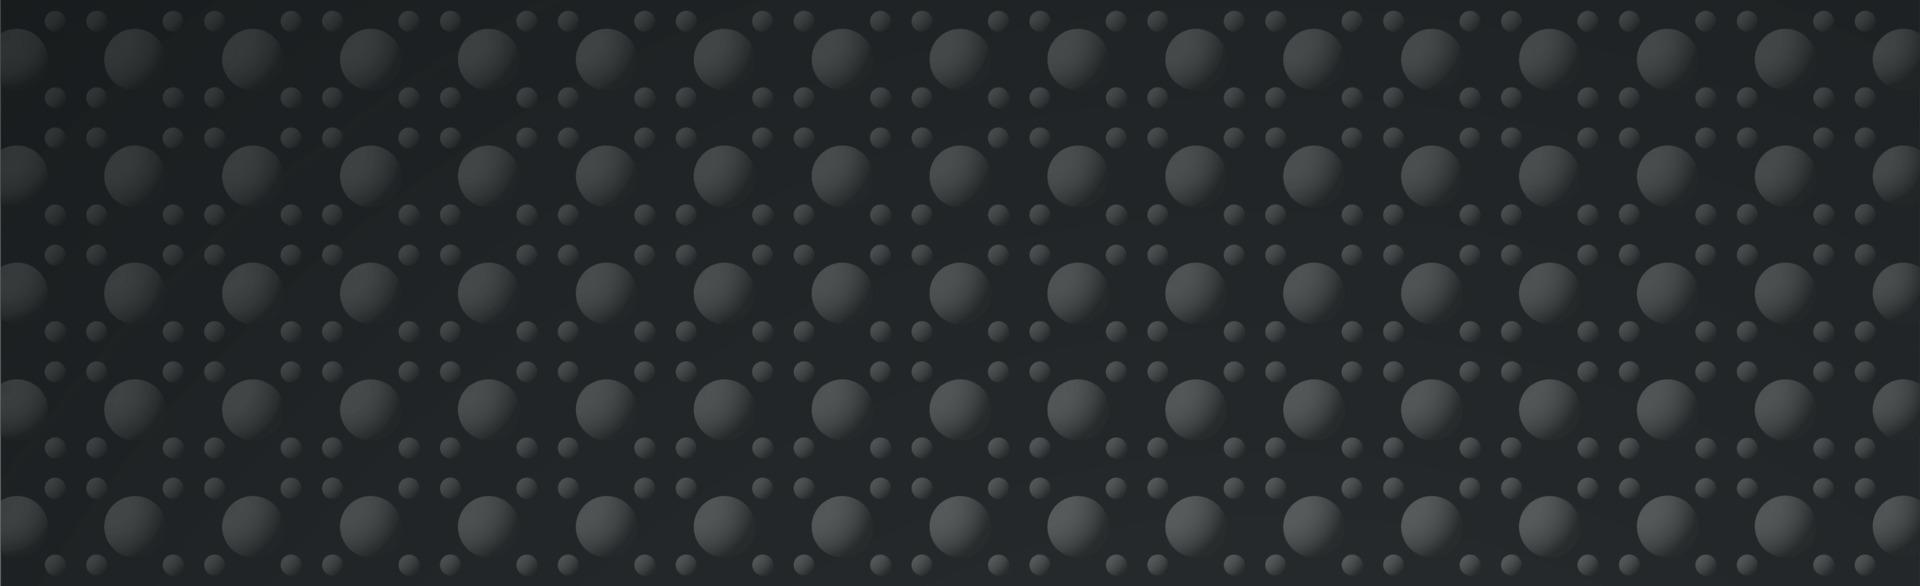 abstracte donkere achtergrond - grijze volumetrische vormen - vector